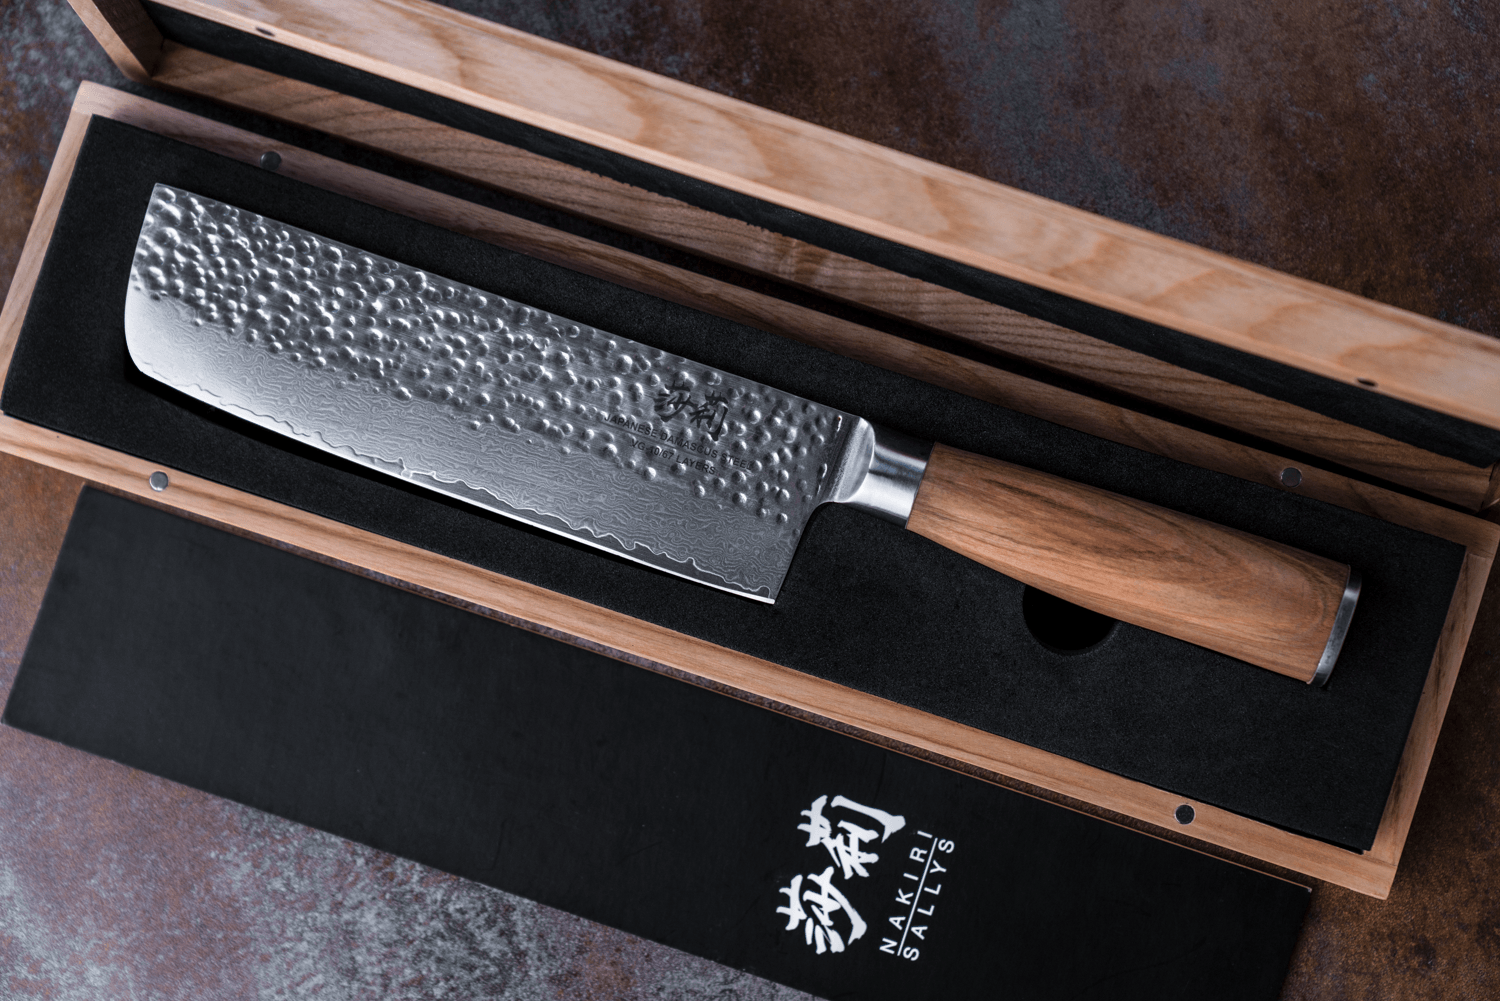 Das Nakiri-Messer liegt in seiner Verpackung